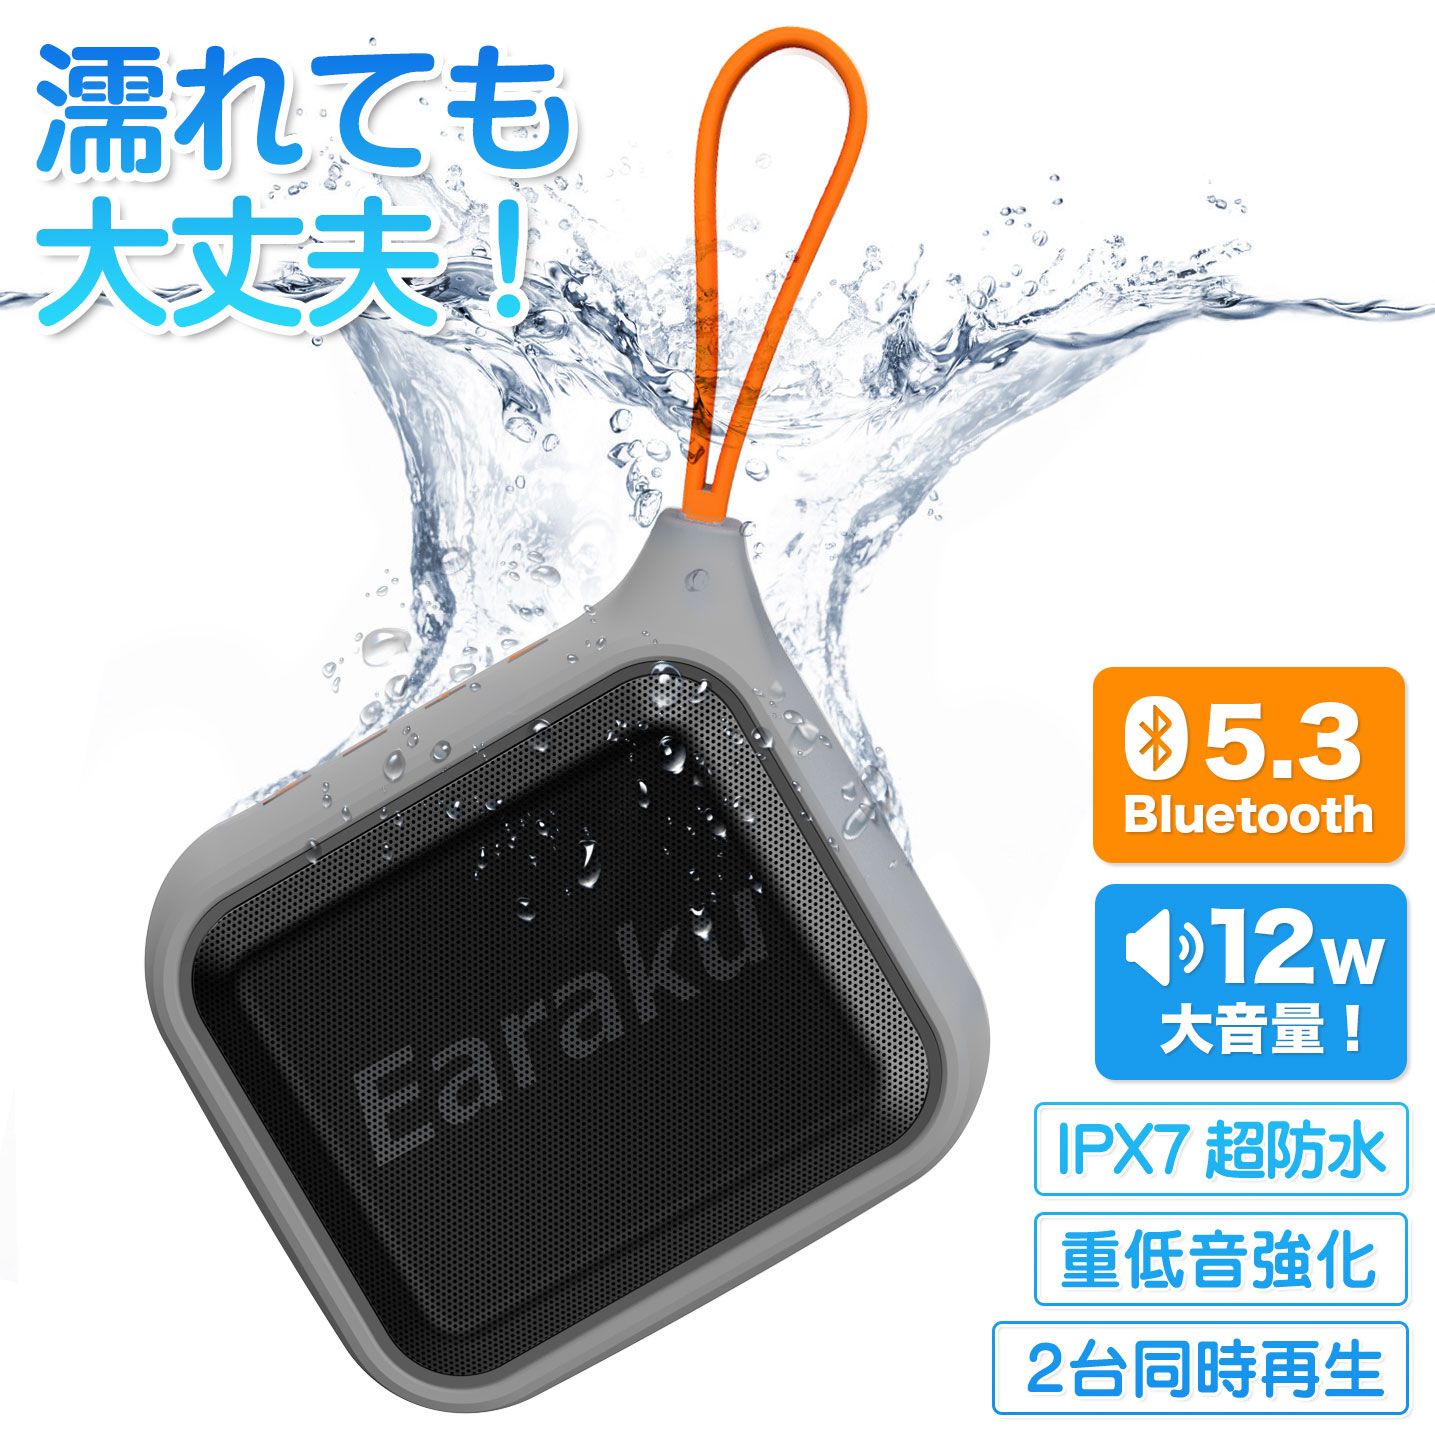 【新発売！超防水】bluetooth スピーカー ワイヤレス 防水 スピーカー ブルートゥース ポータブル スピーカー 小型  Bluetoothスピーカー ポータブルスピーカー